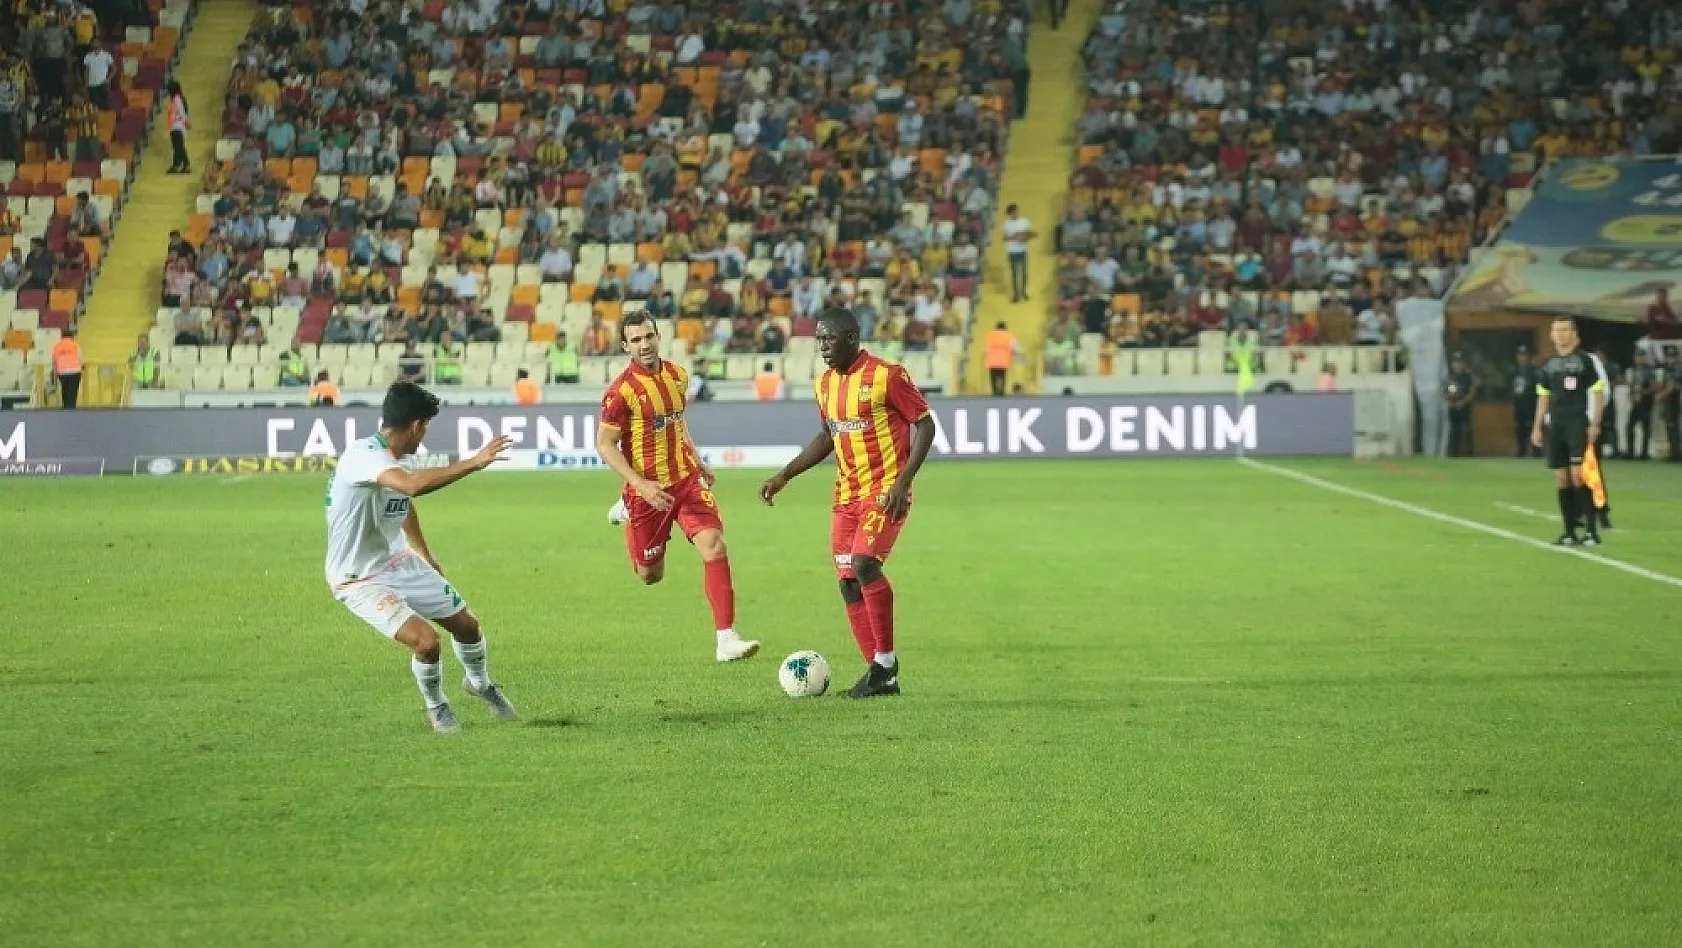 Süper Lig: BTC Türk Yeni Malatyaspor: 2 - Alanyaspor: 3 (Maç sonucu) 